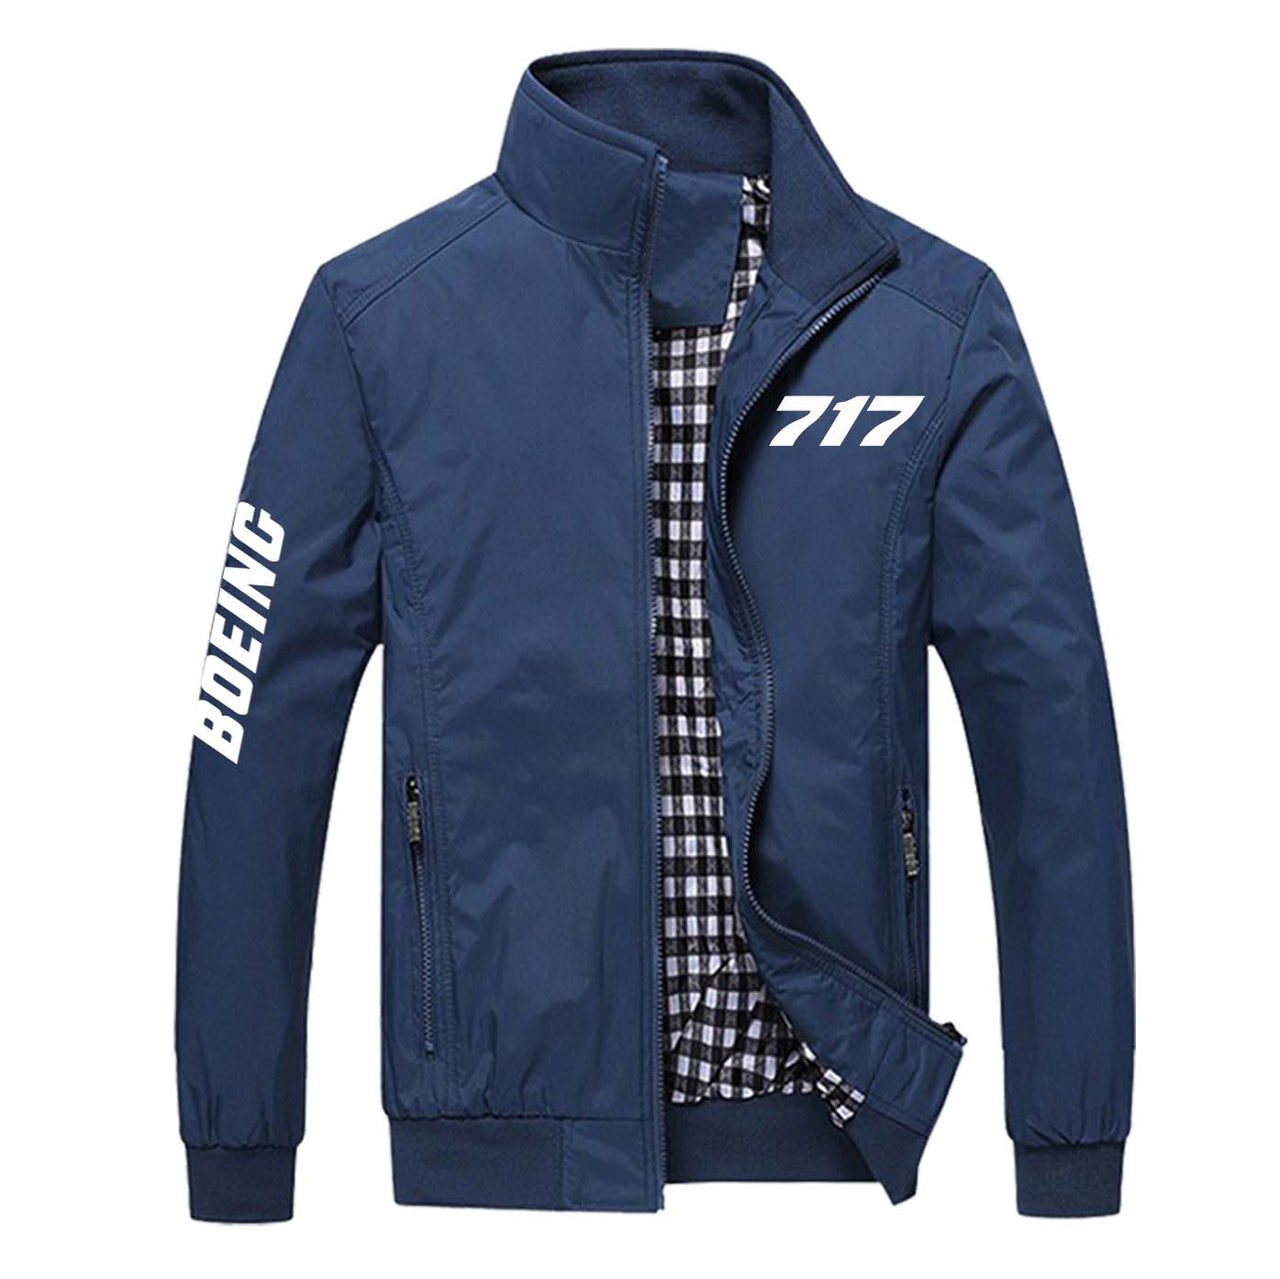 717 Flat Text Designed Stylish Jackets